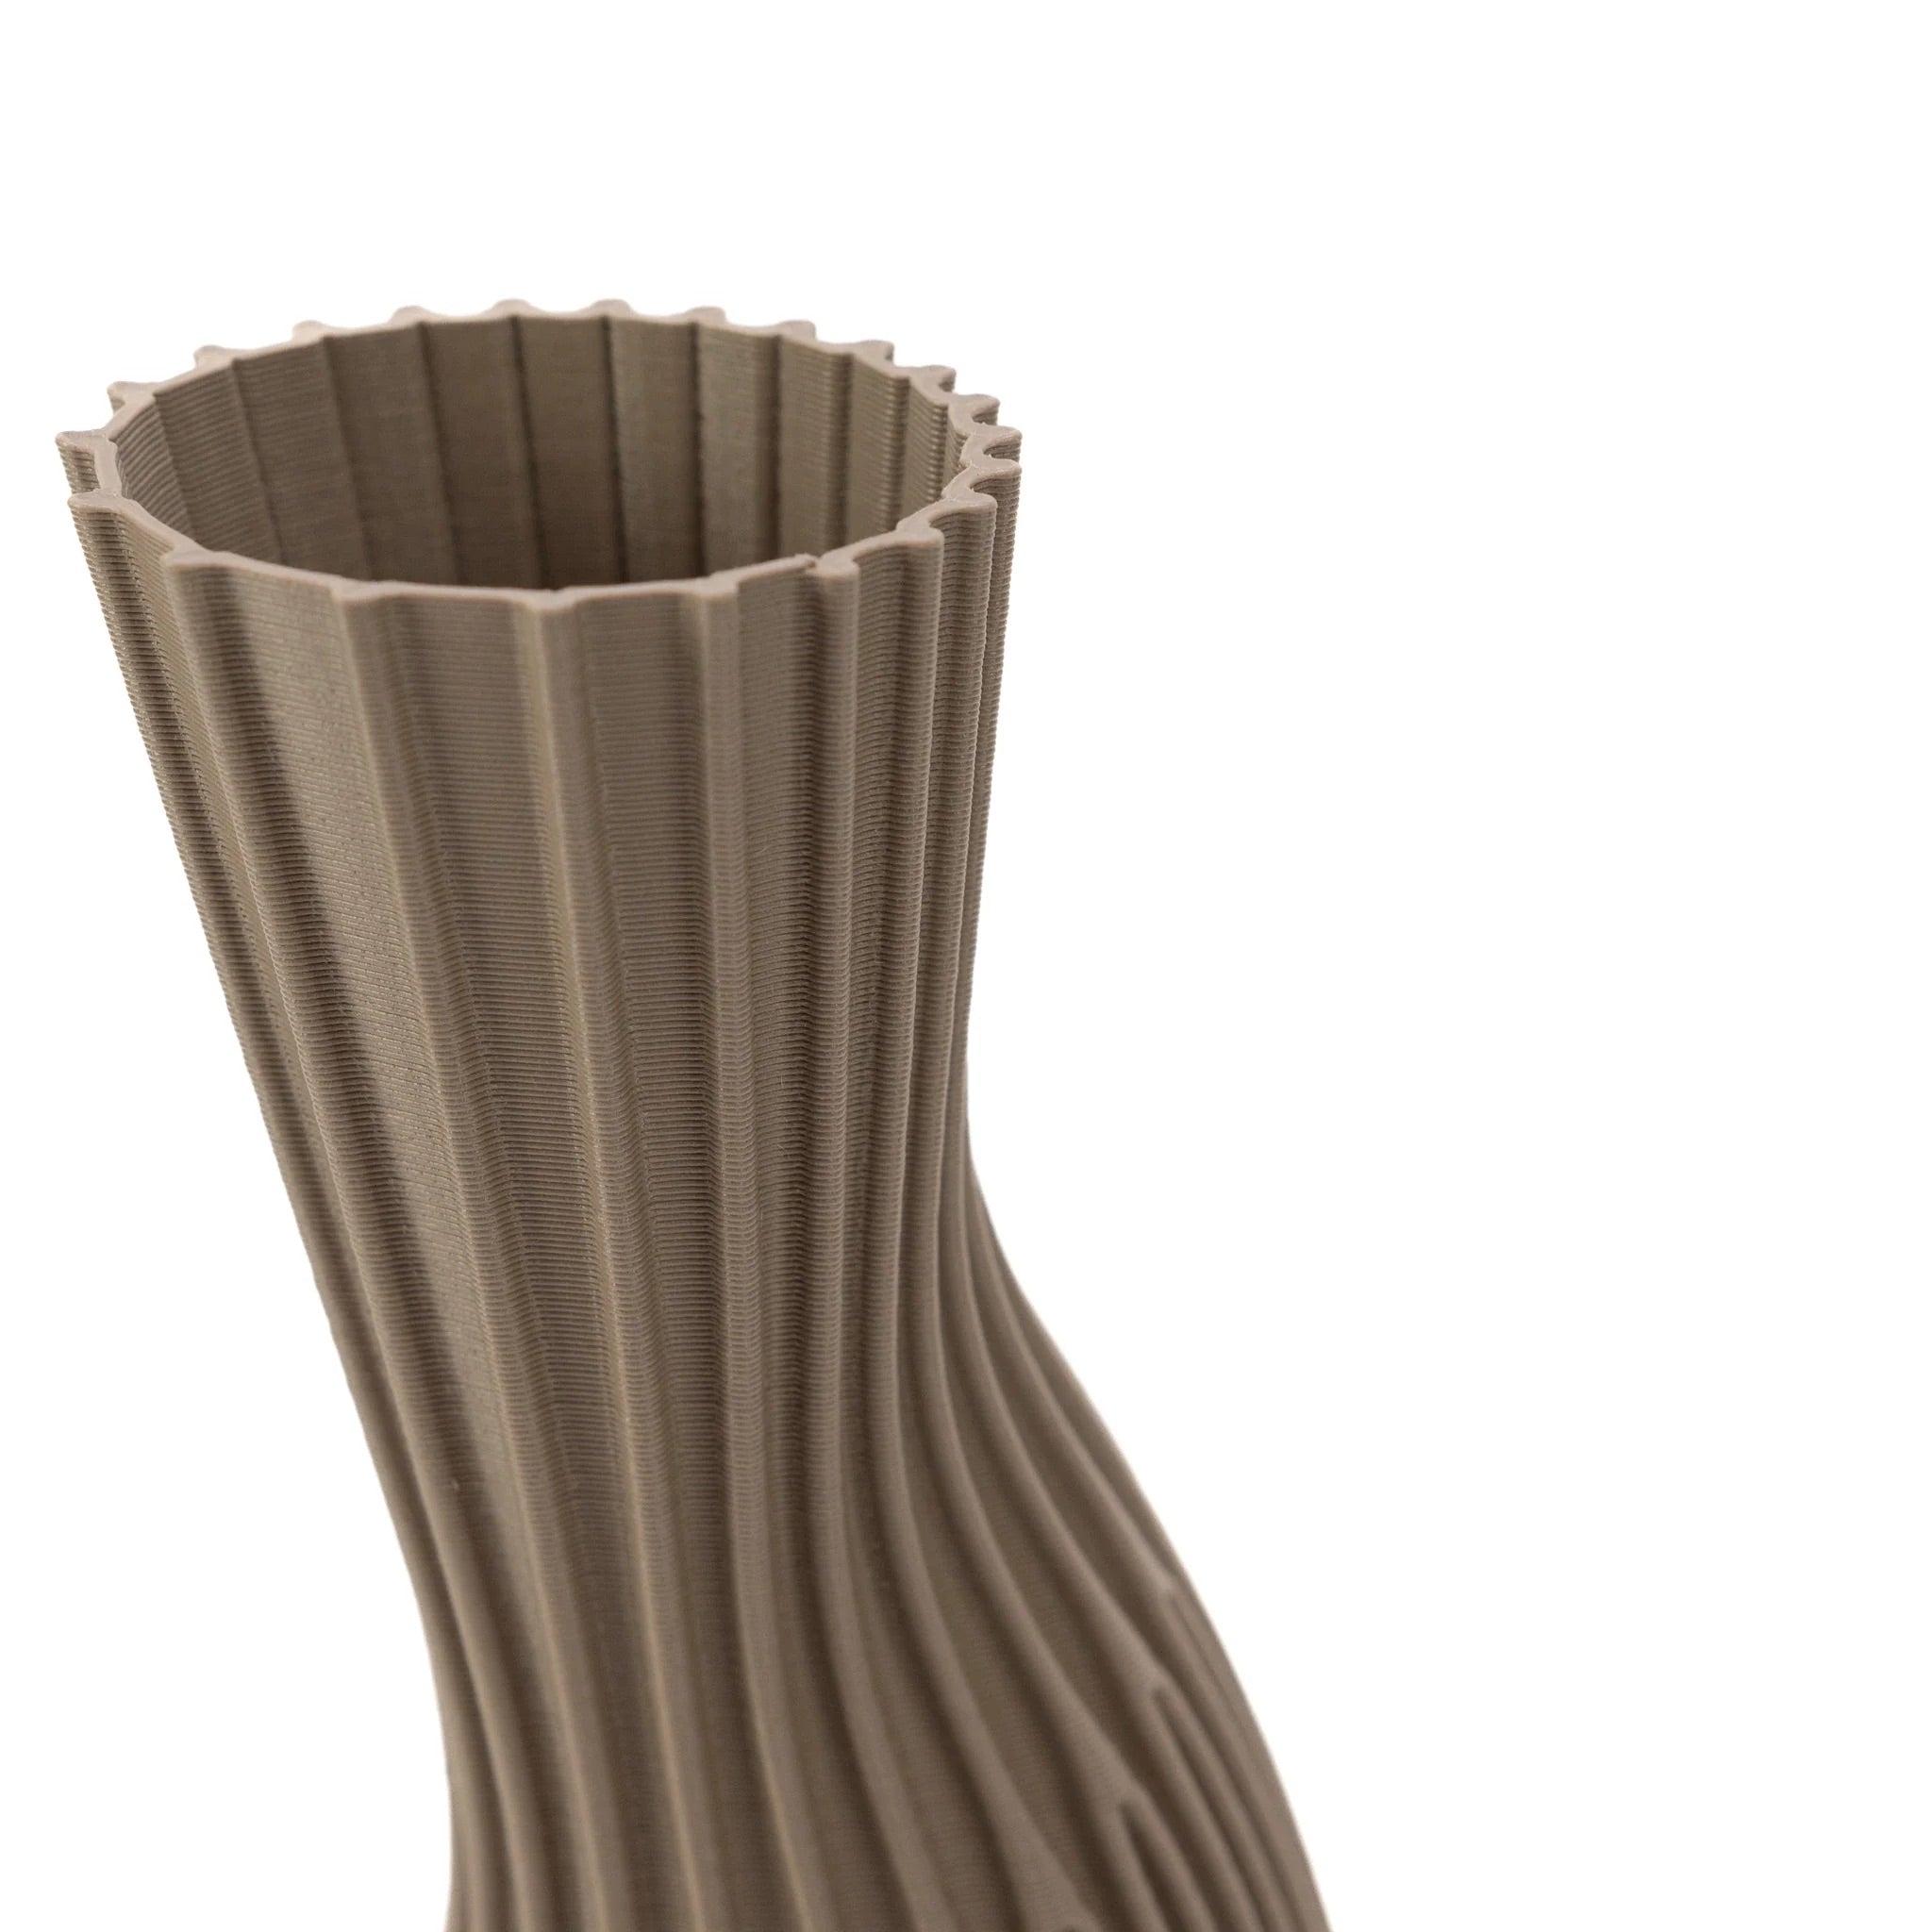 Cyrc Conan Vase